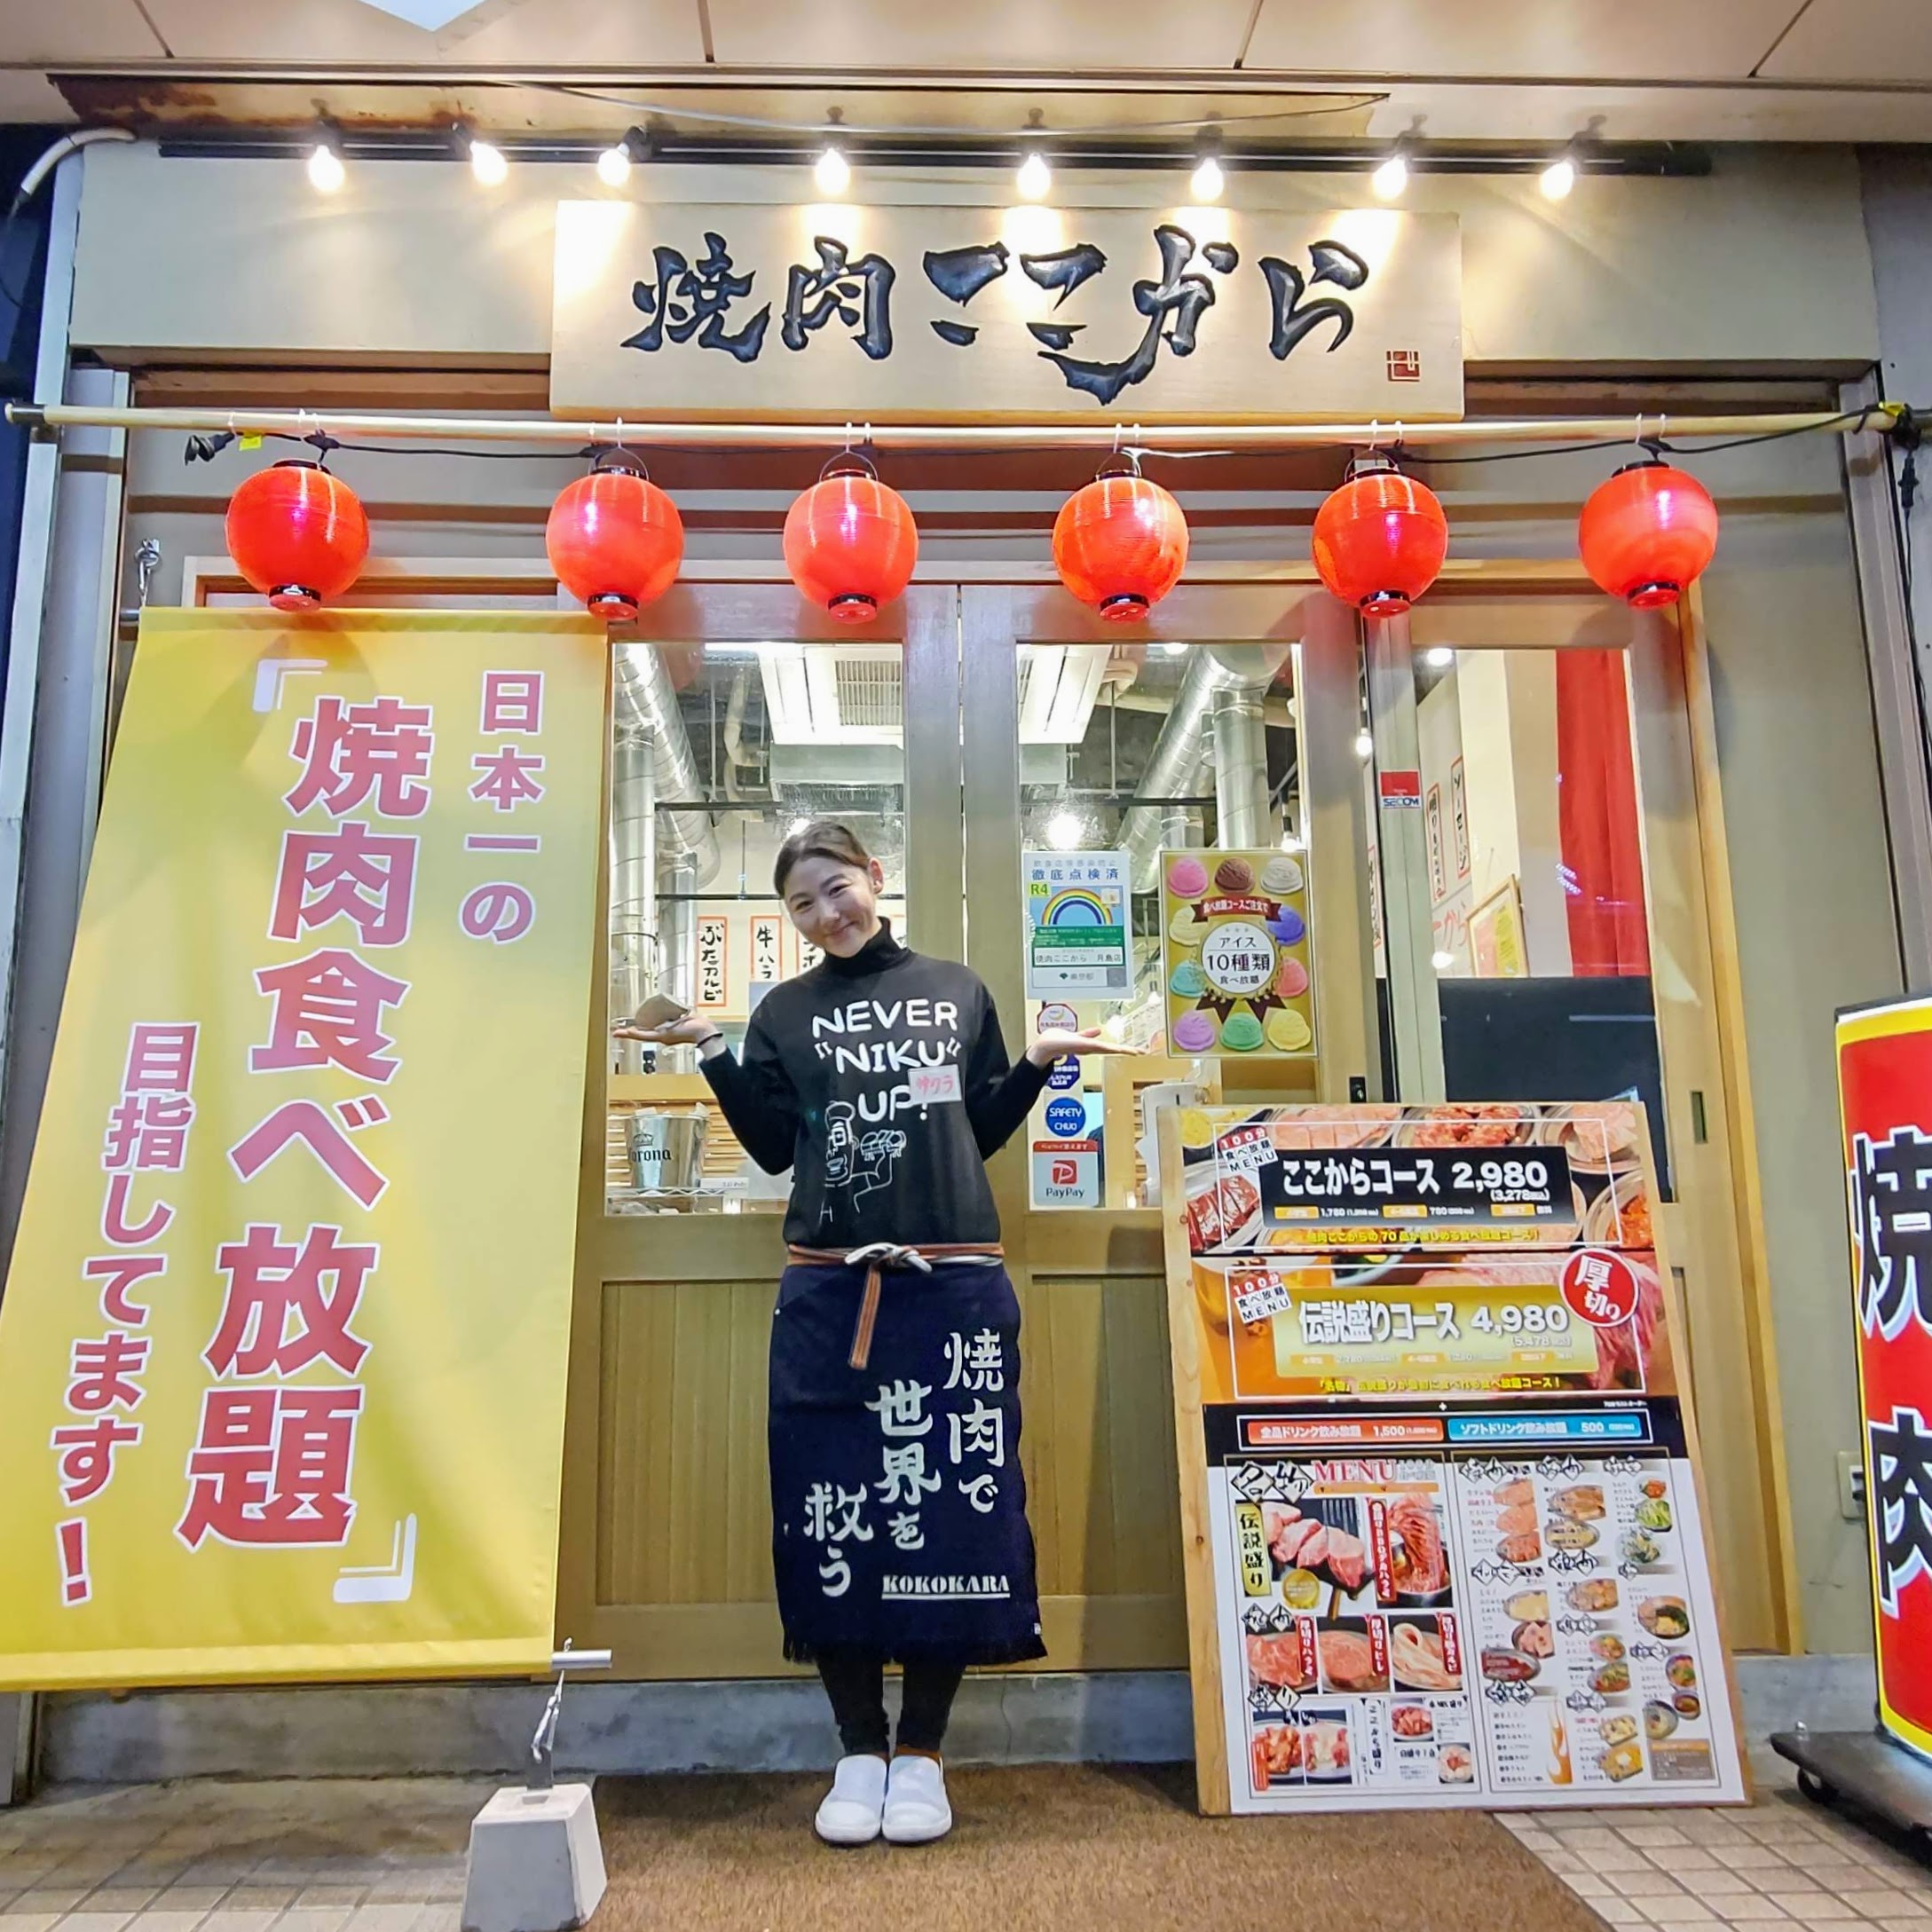 東京都中央区 焼肉ここから 月島店 食べ放題のお店 店長 焼肉で世界を救う